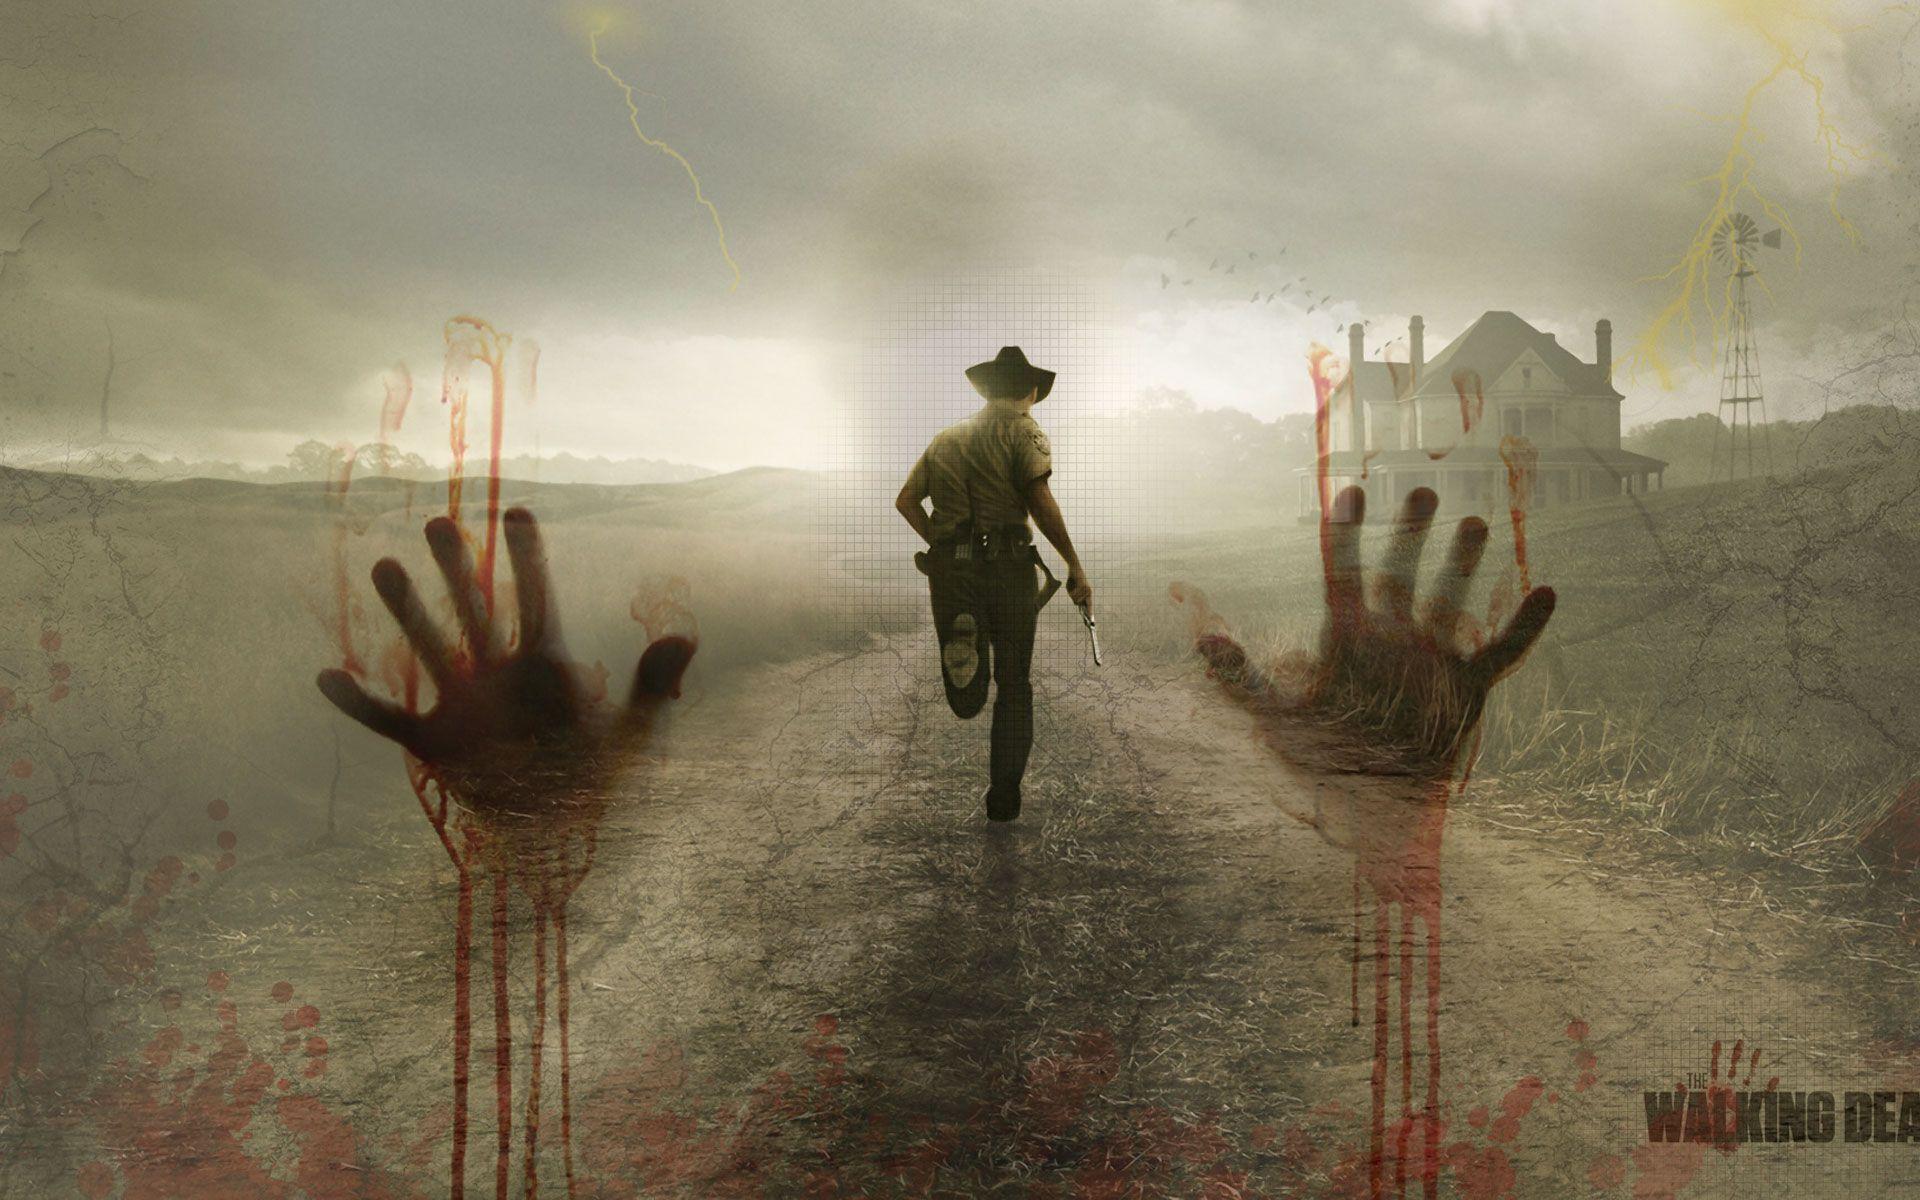 Walking Dead Wallpaper HD